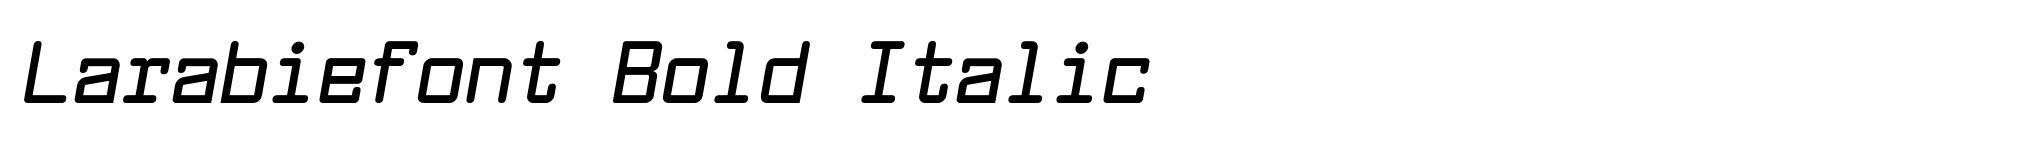 Larabiefont Bold Italic image